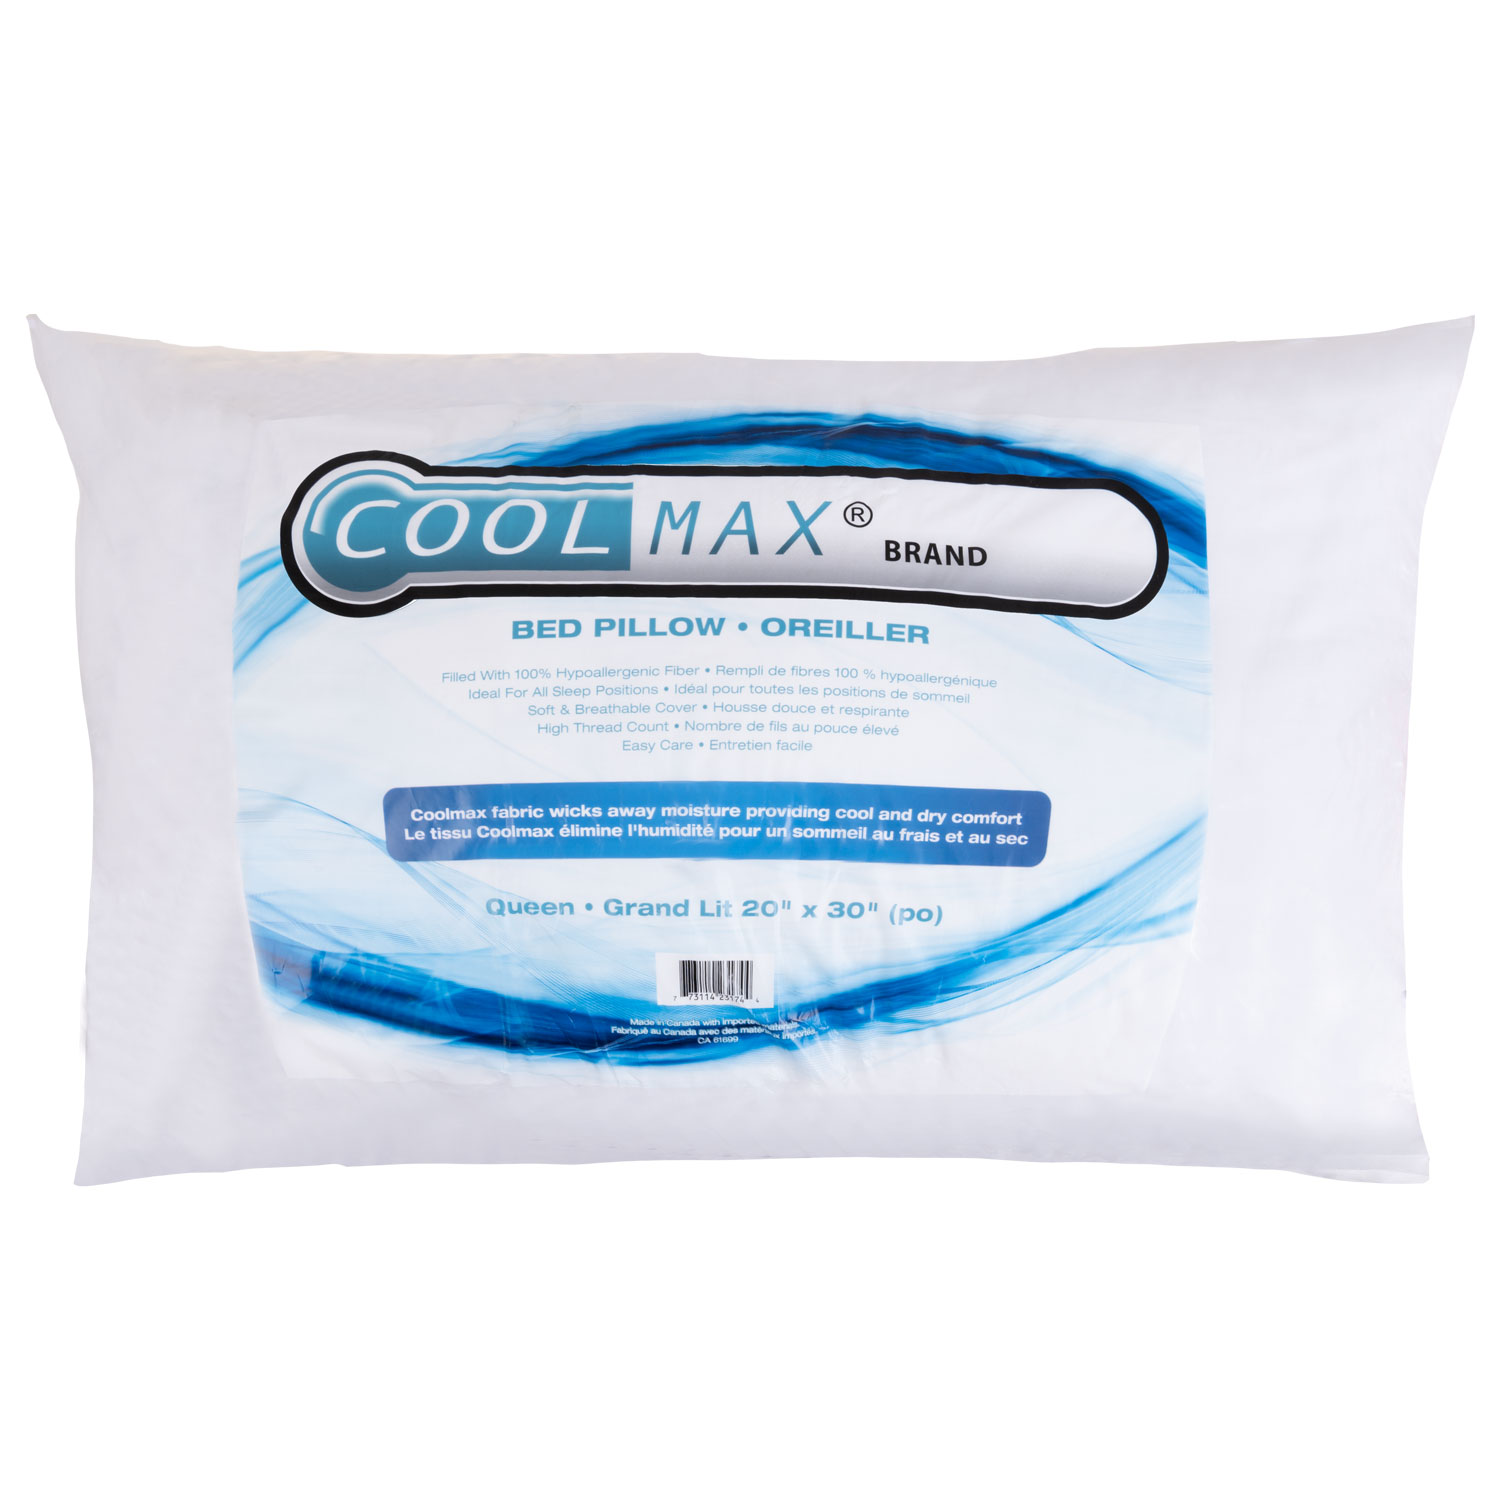 CoolMax - Moisture wicking cotton pillow, 20"x30" - Queen